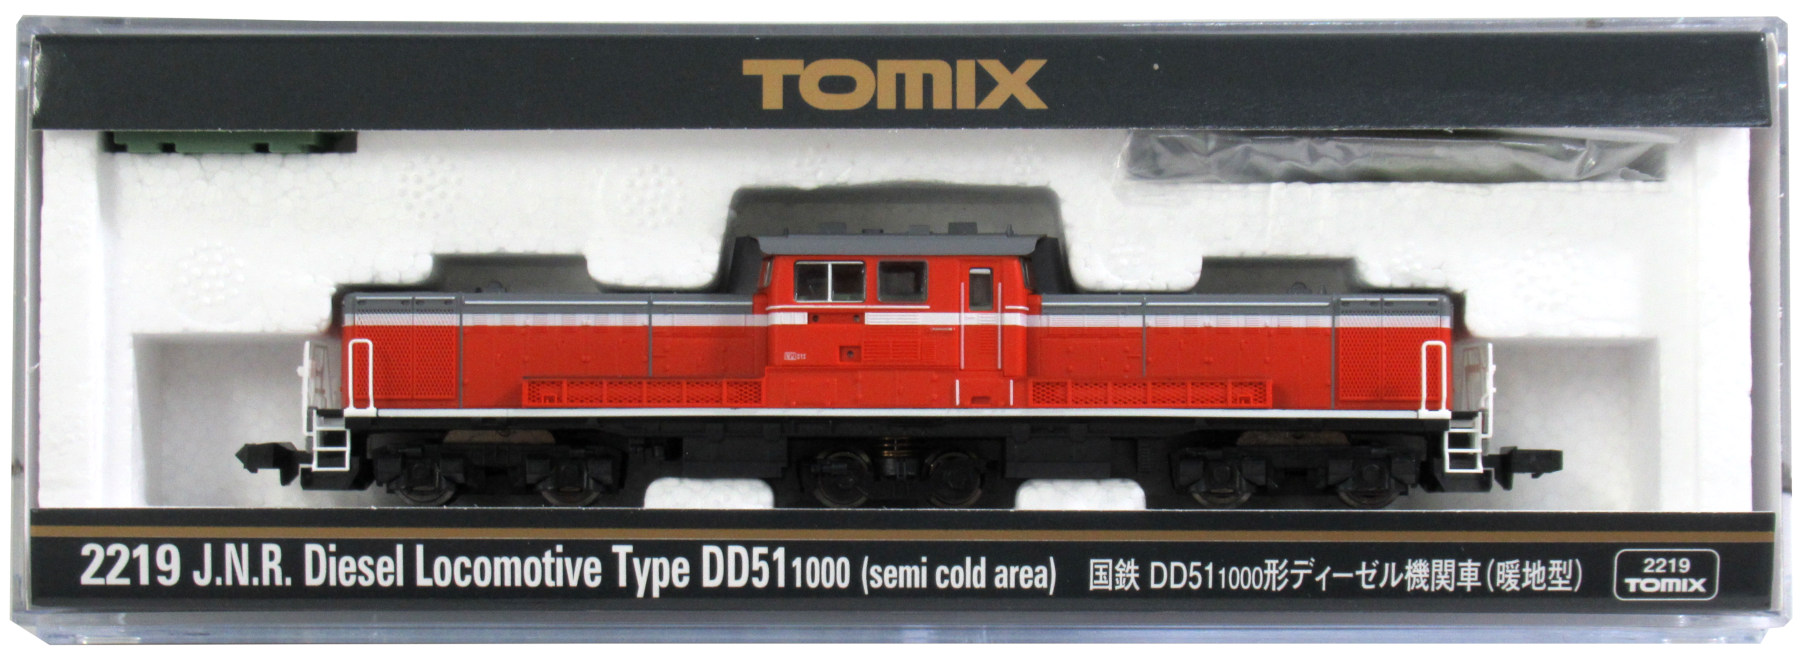 公式]鉄道模型(2219国鉄 DD51-1000形 ディーゼル機関車 (暖地型))商品 